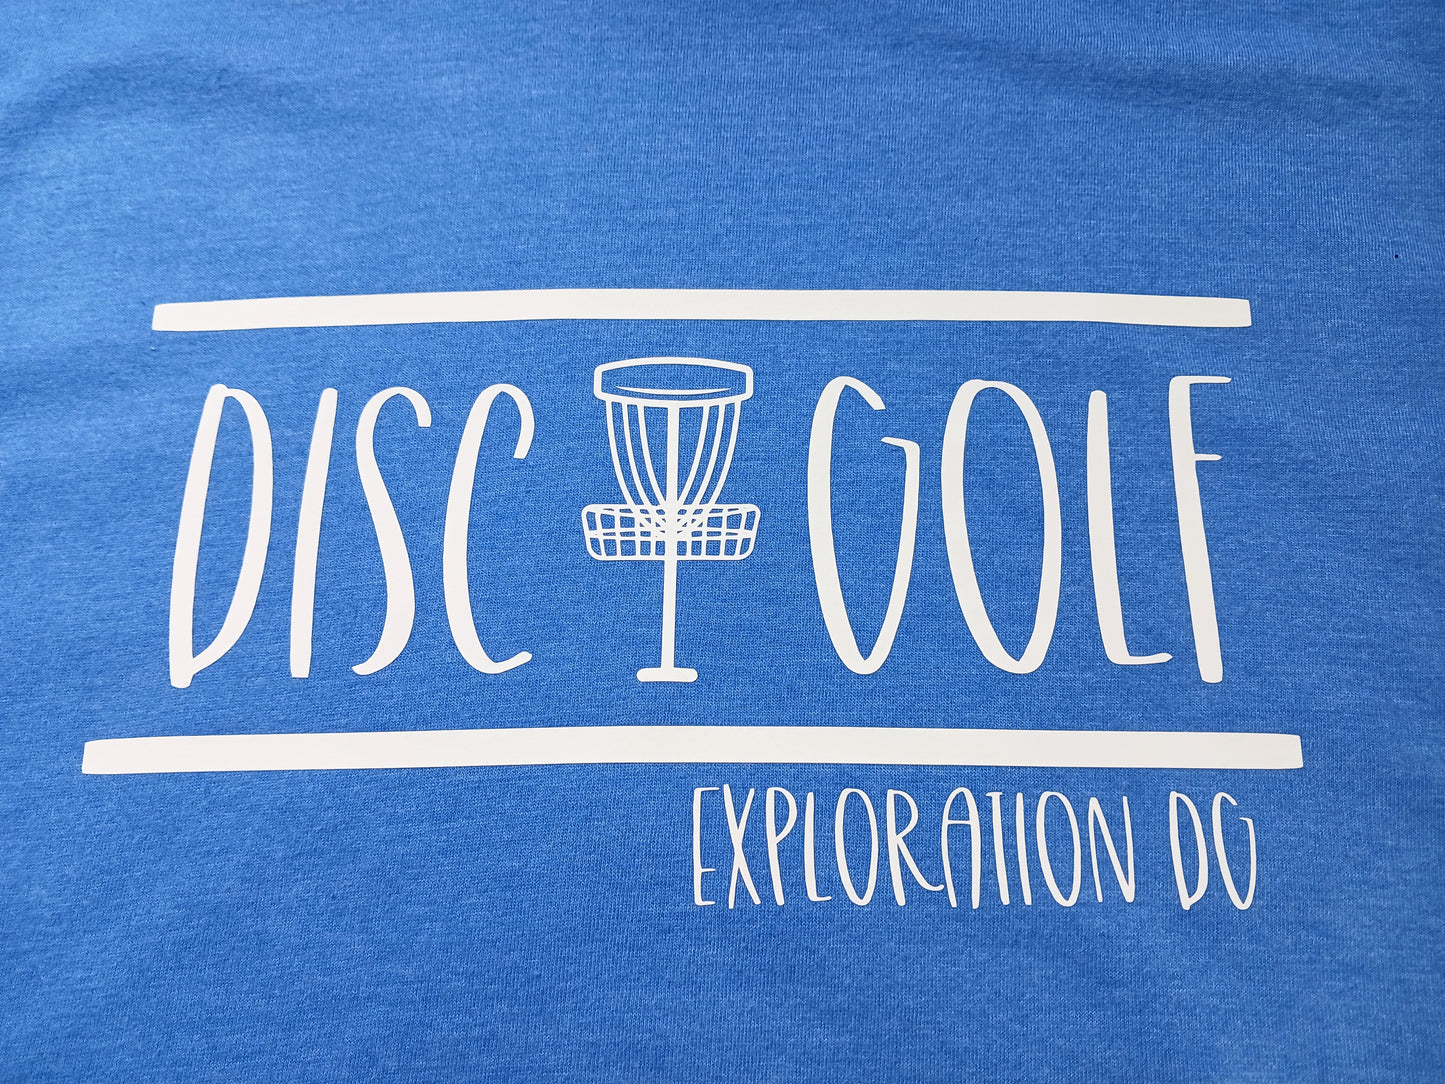 EDG 'Disc Golf' Shirt